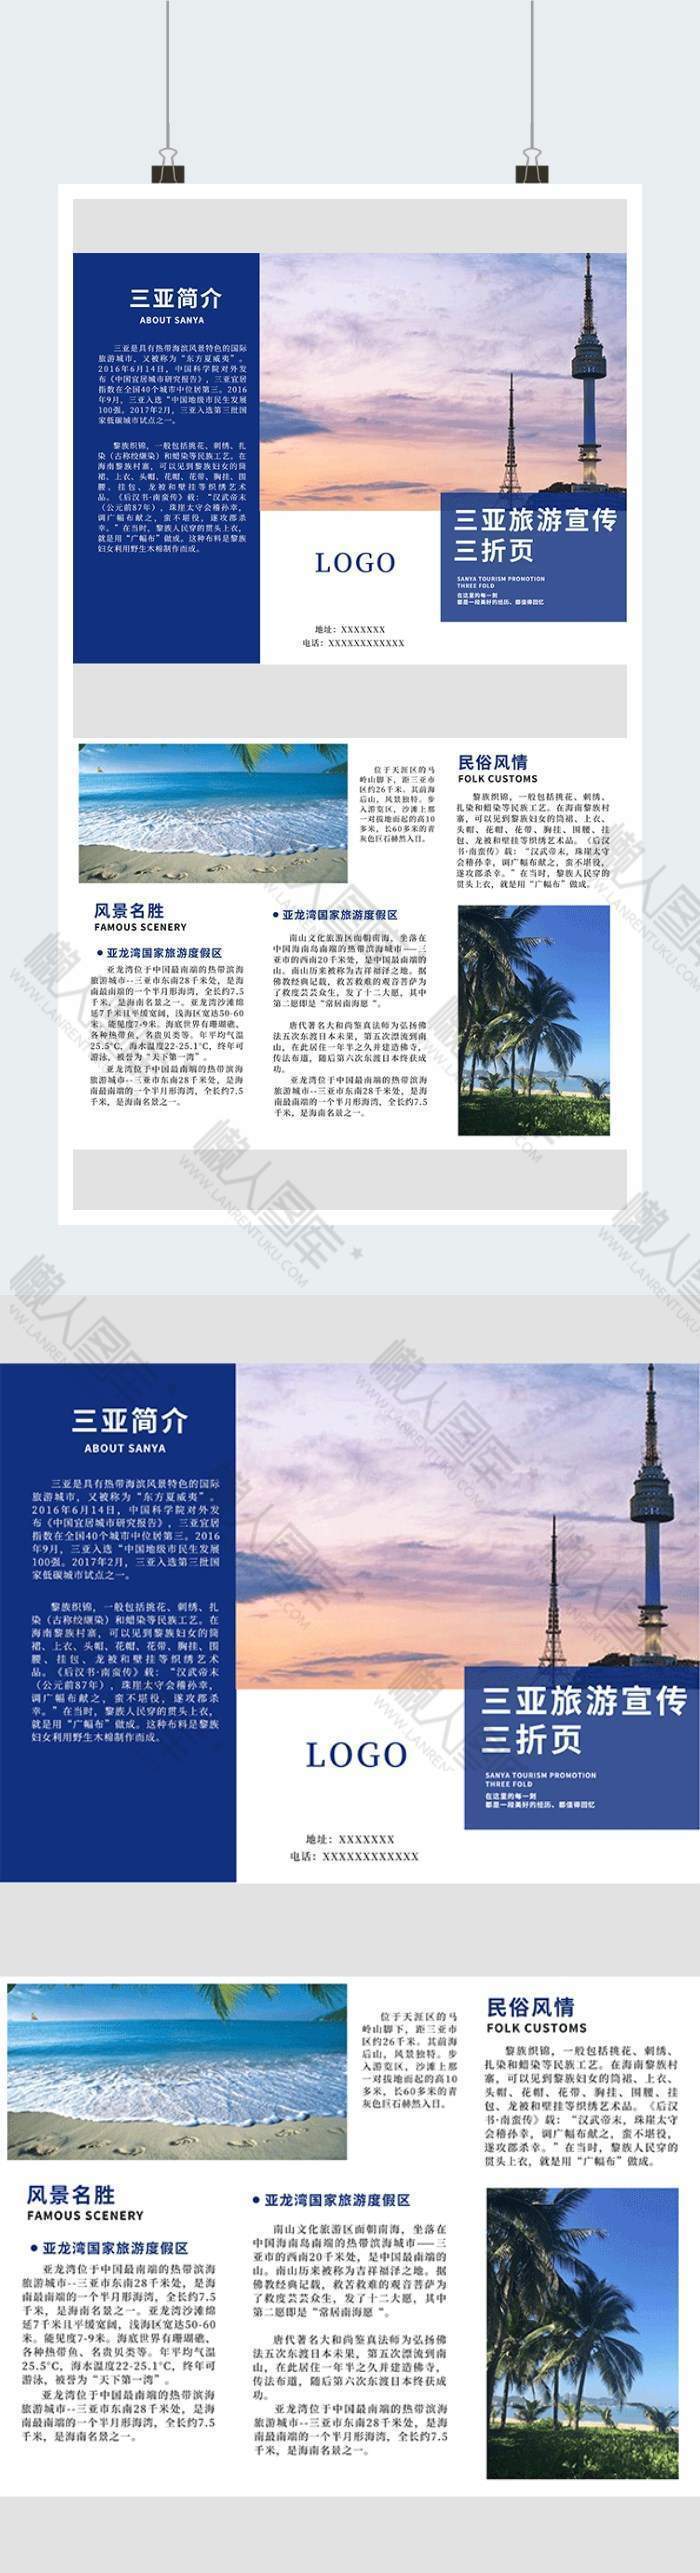 三亚旅游宣传广告平面三折页